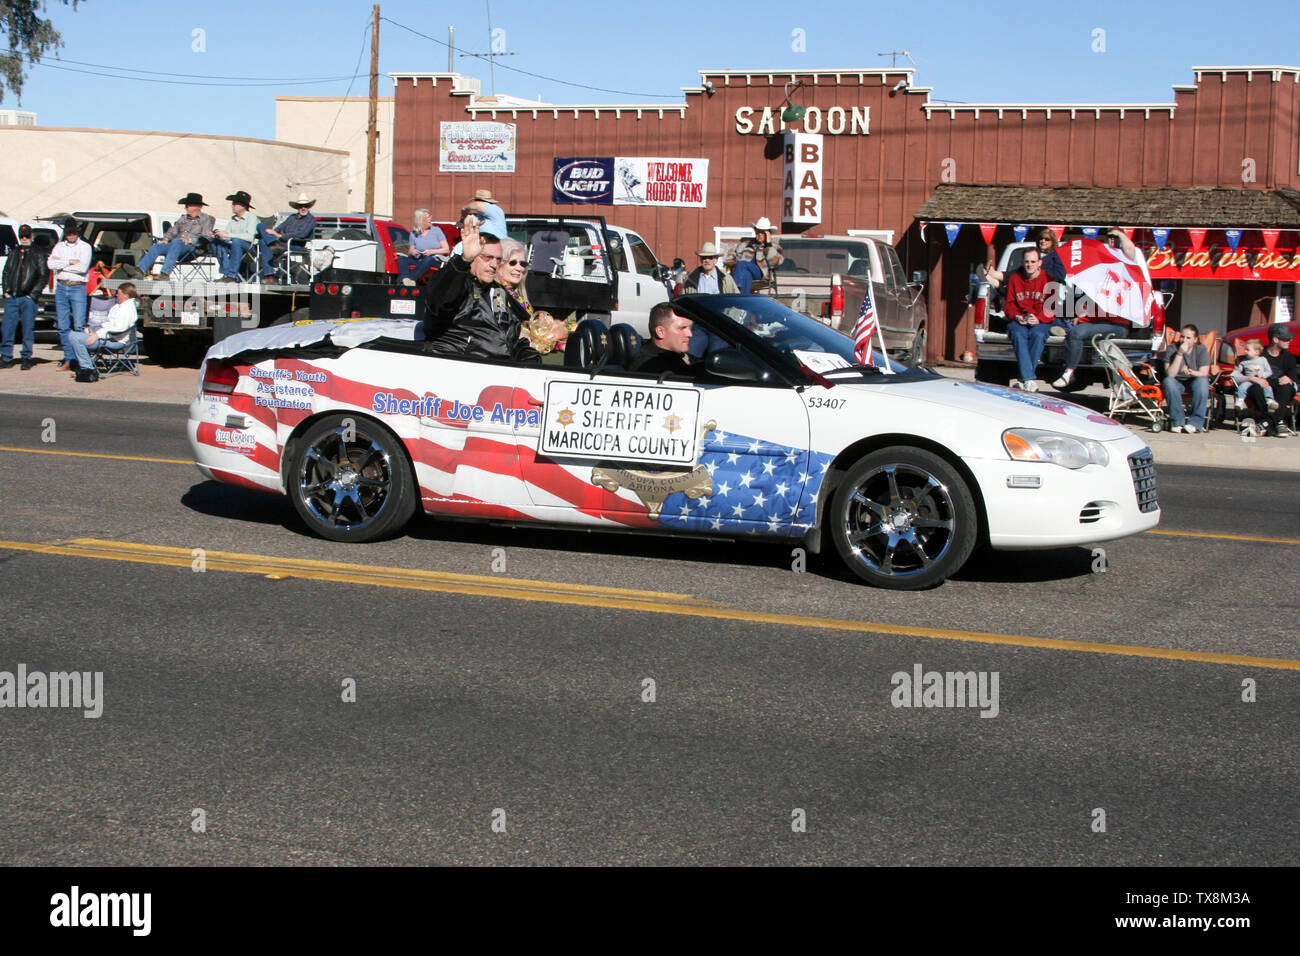 sheriff joe arpaio  Maricopa County, Arizona parade Stock Photo